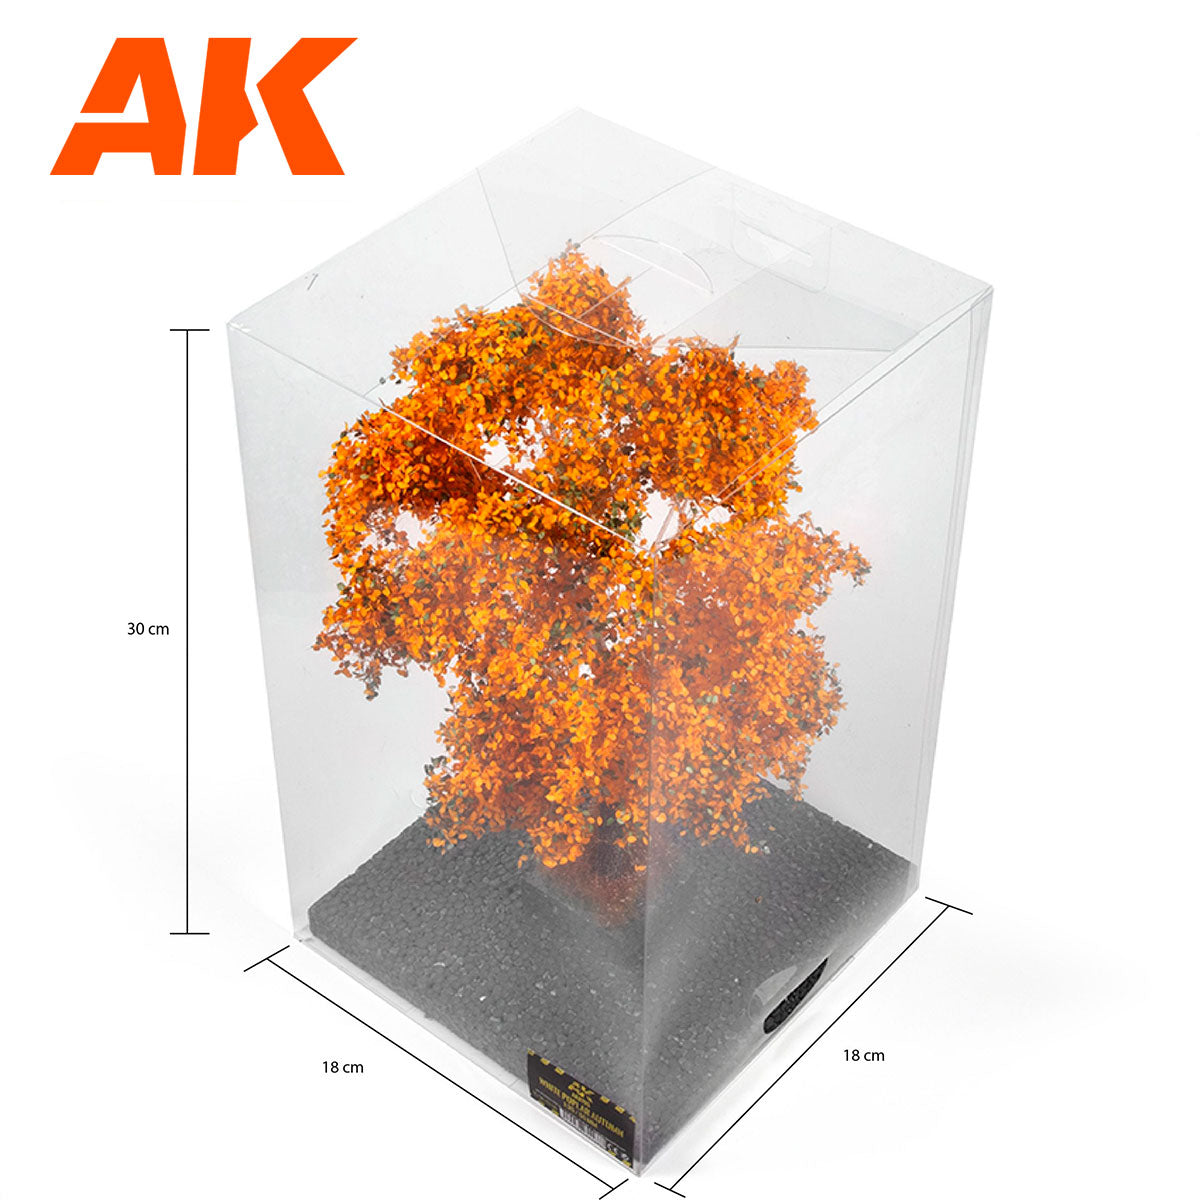 AK8195 - White Poplar Autumn Tree 1:35 and 1:32